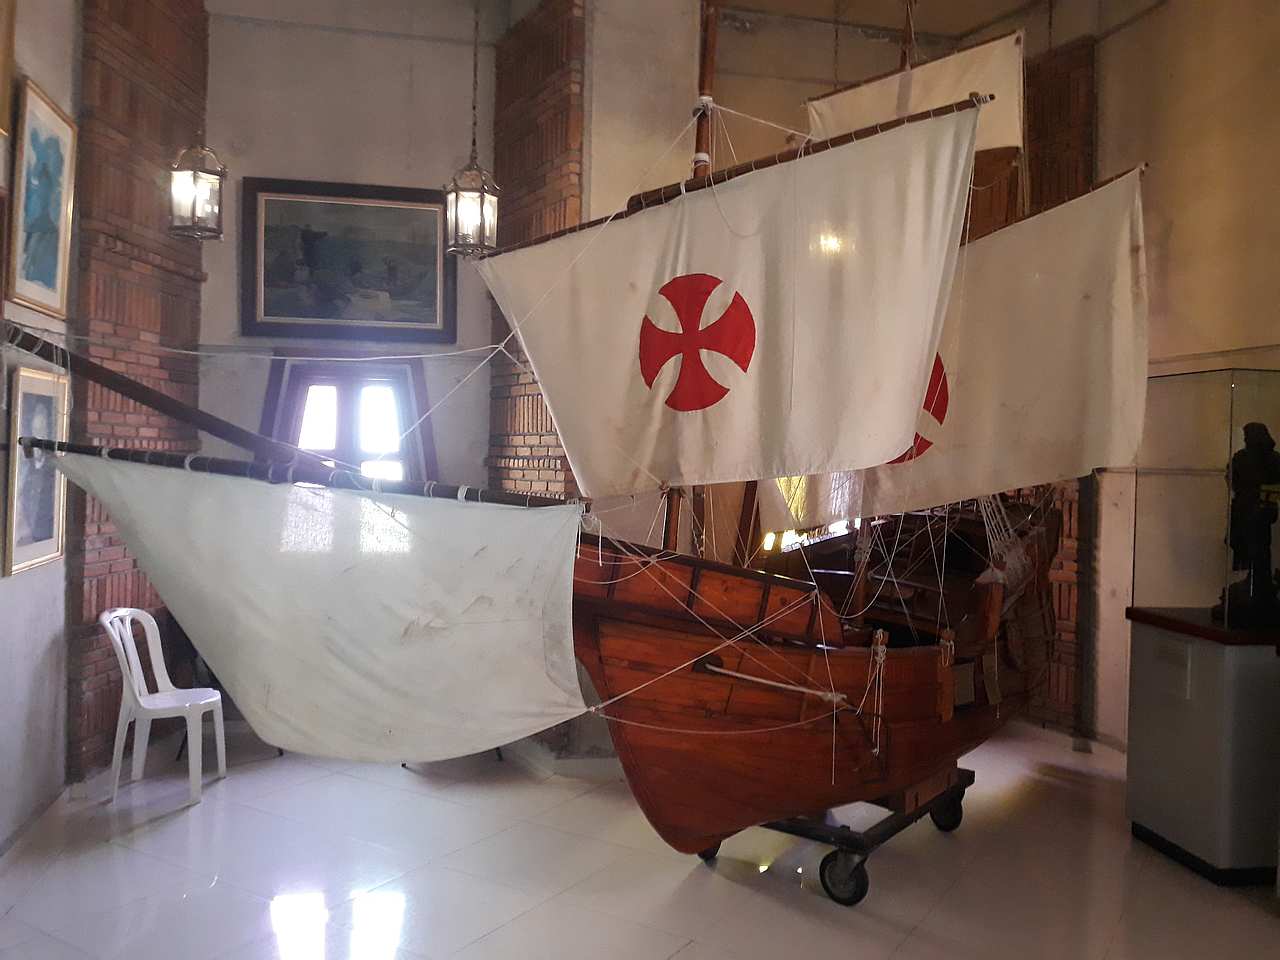 Replica de Santa Maria, the ship of Columbus